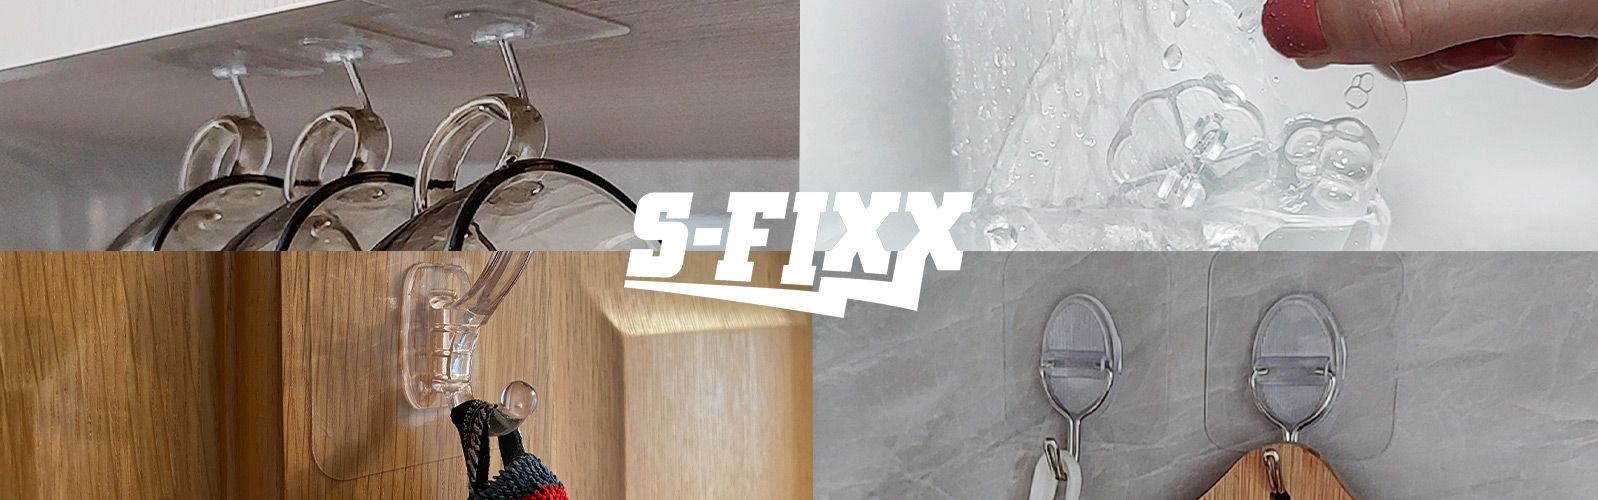 S-FIXX®  Haftende Haken